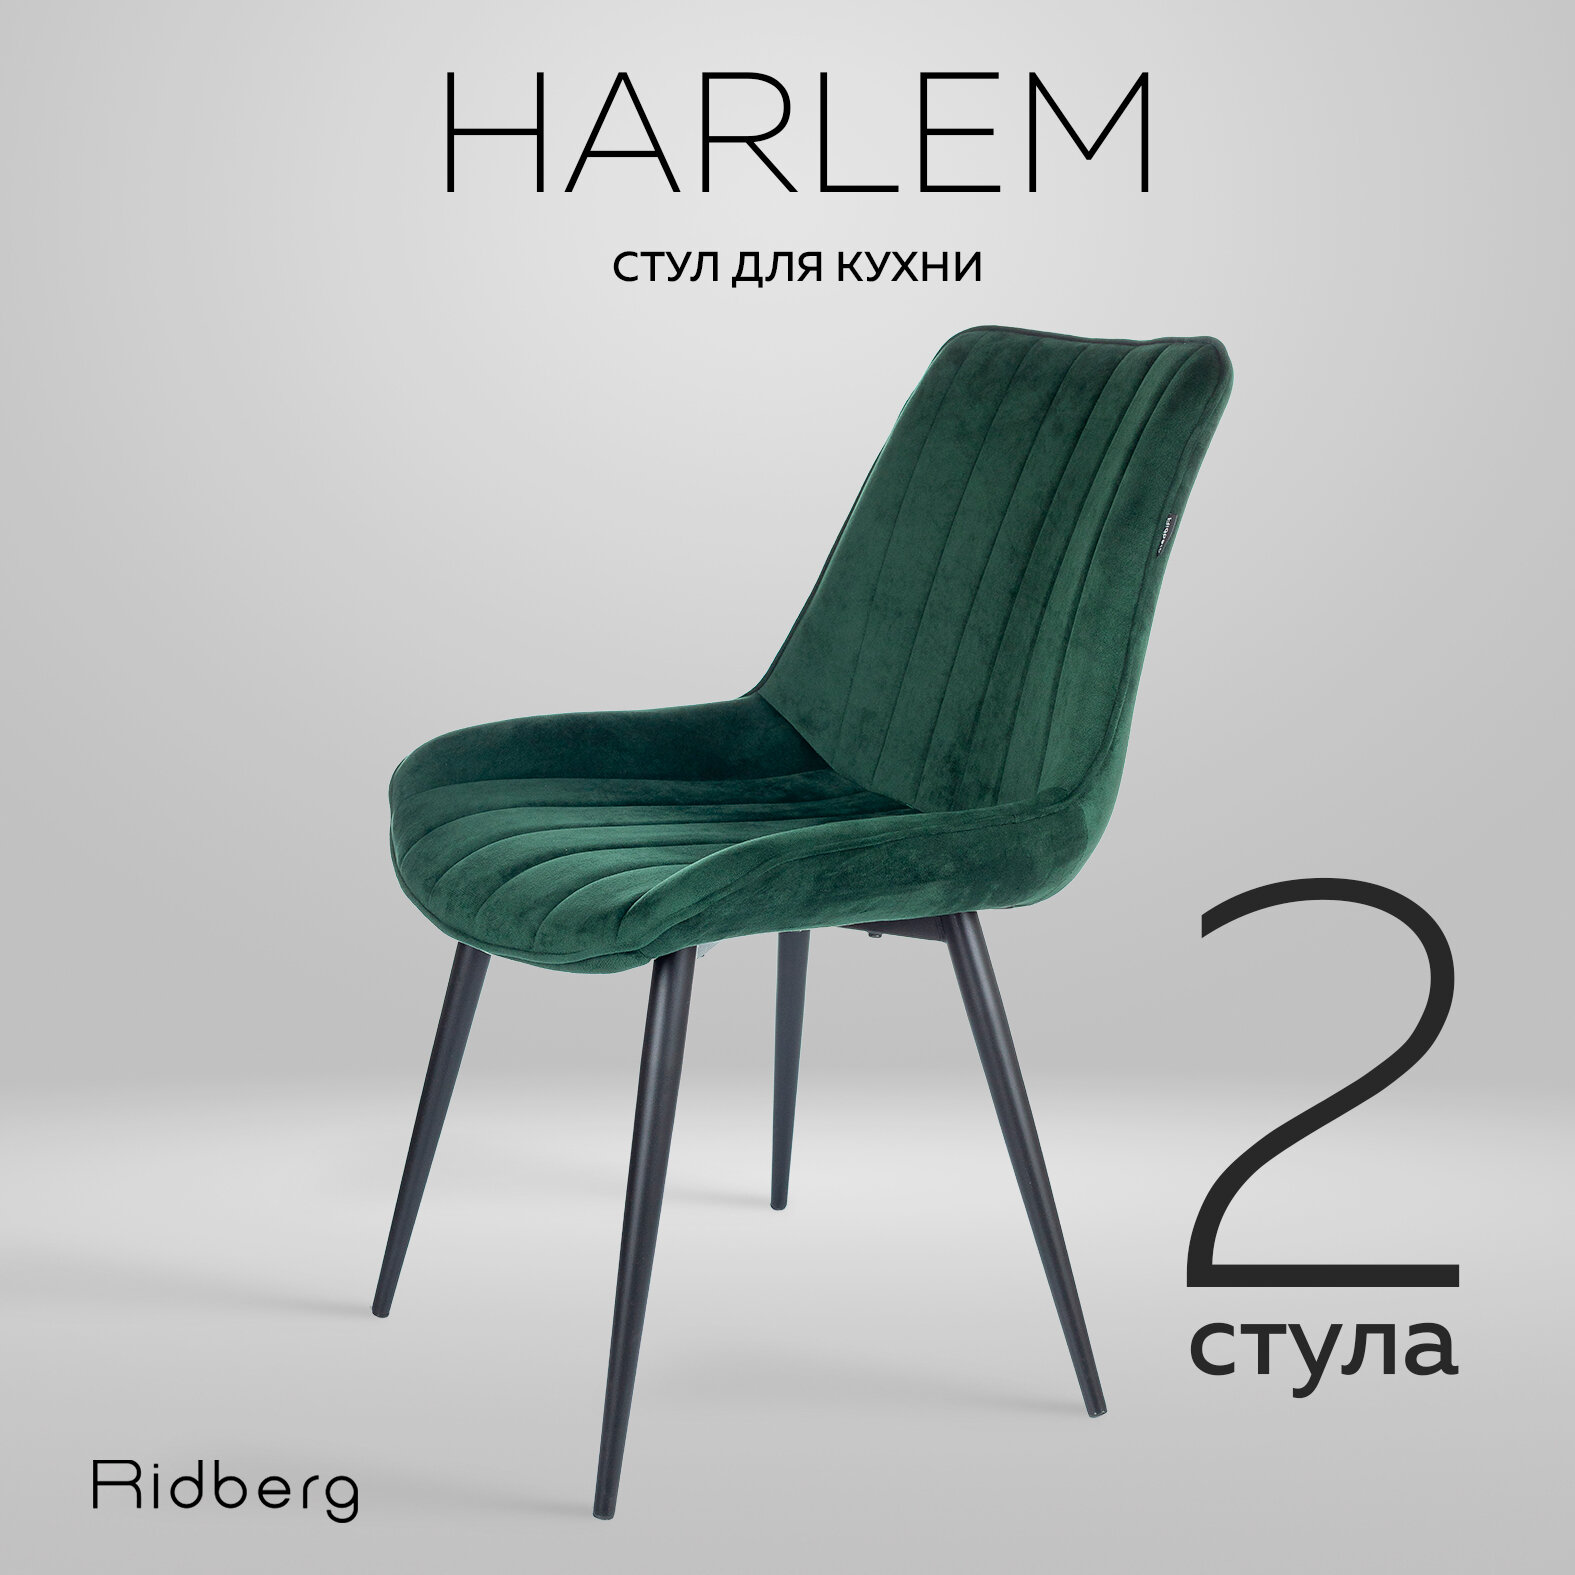 Ridberg "HARLEM" - 2 стула для кухни, обитые велюром зеленого цвета